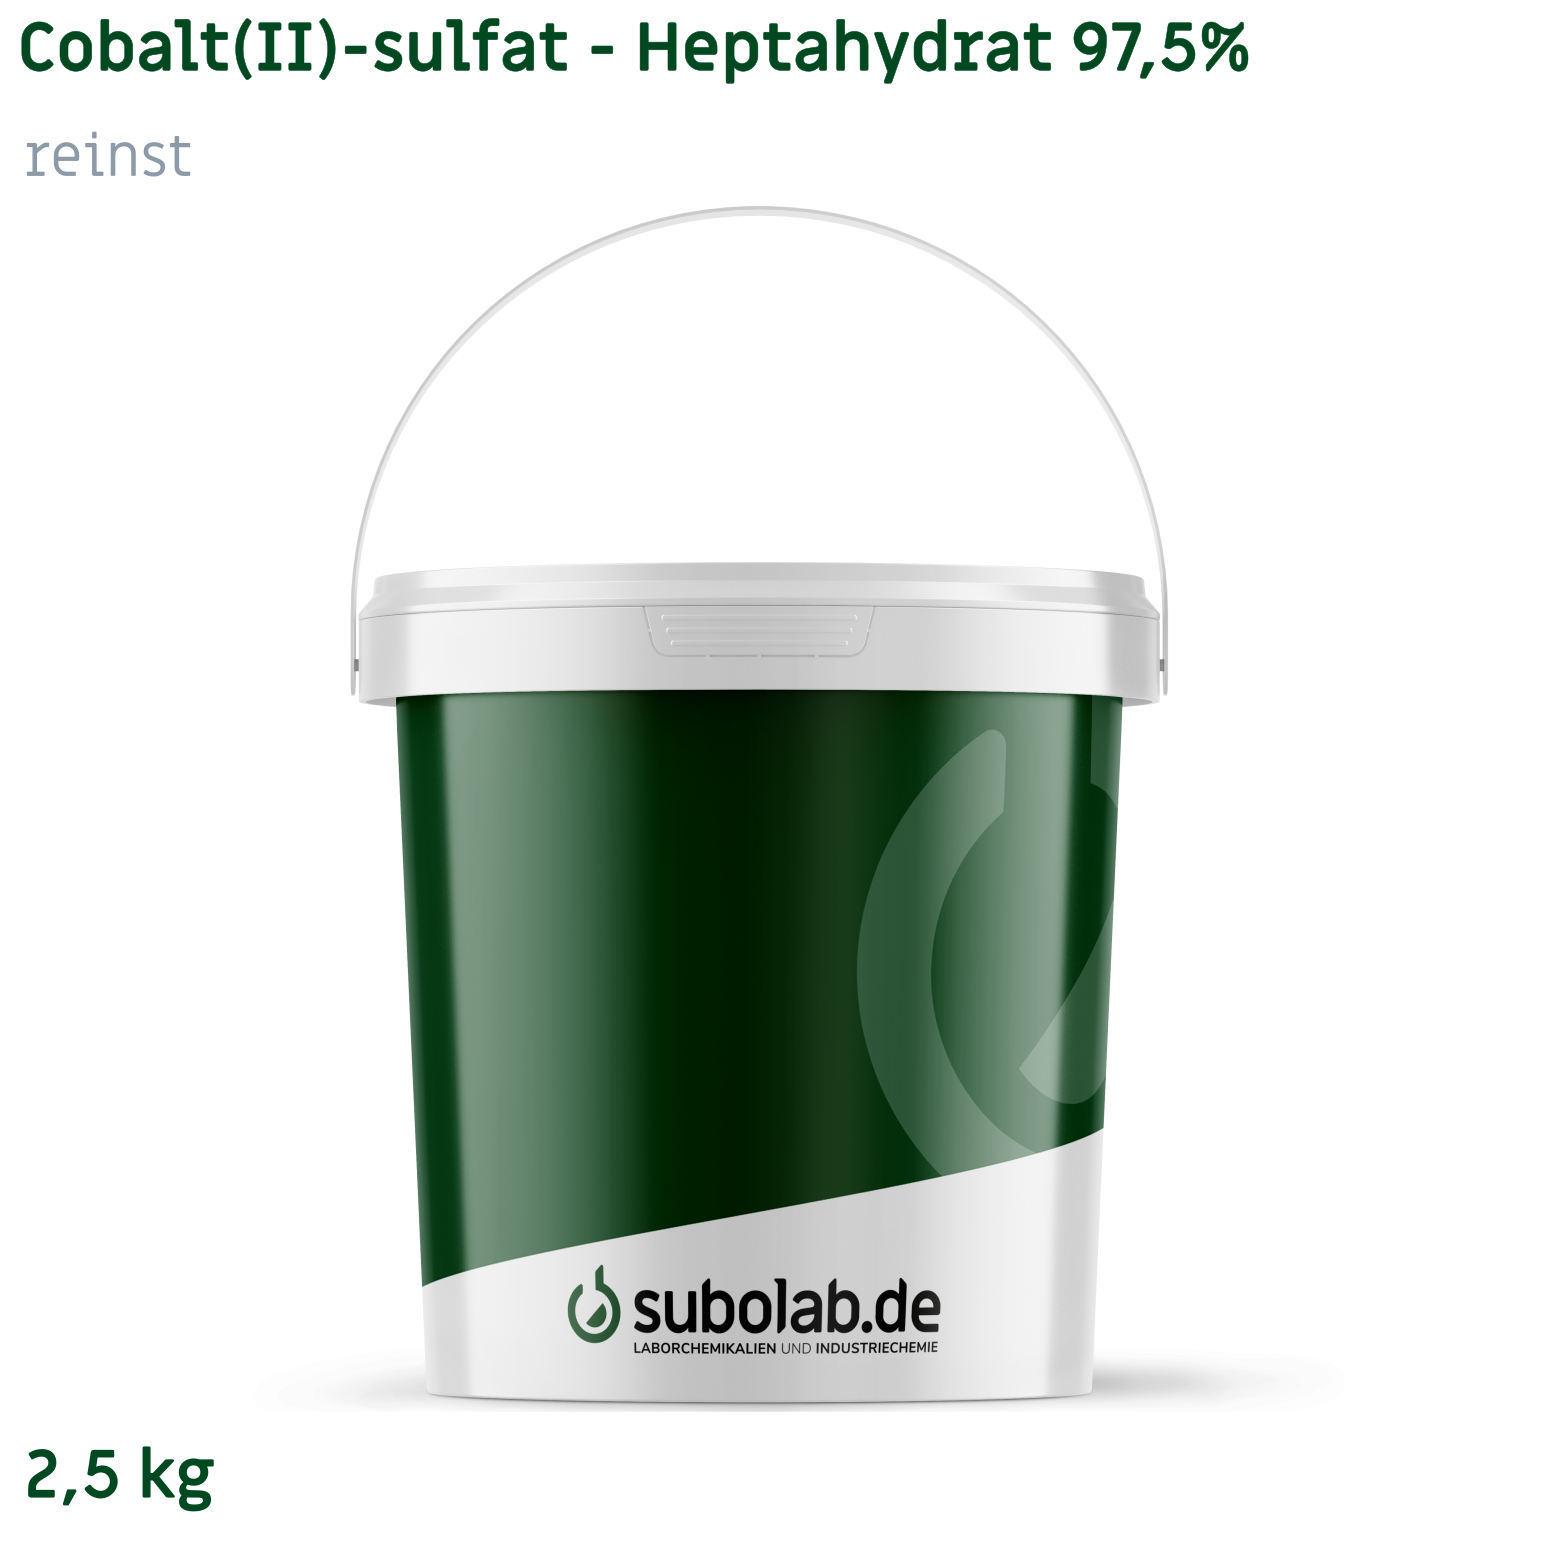 Bild von Cobalt(II)-sulfat - Heptahydrat 97,5%
reinst (2,5 kg)